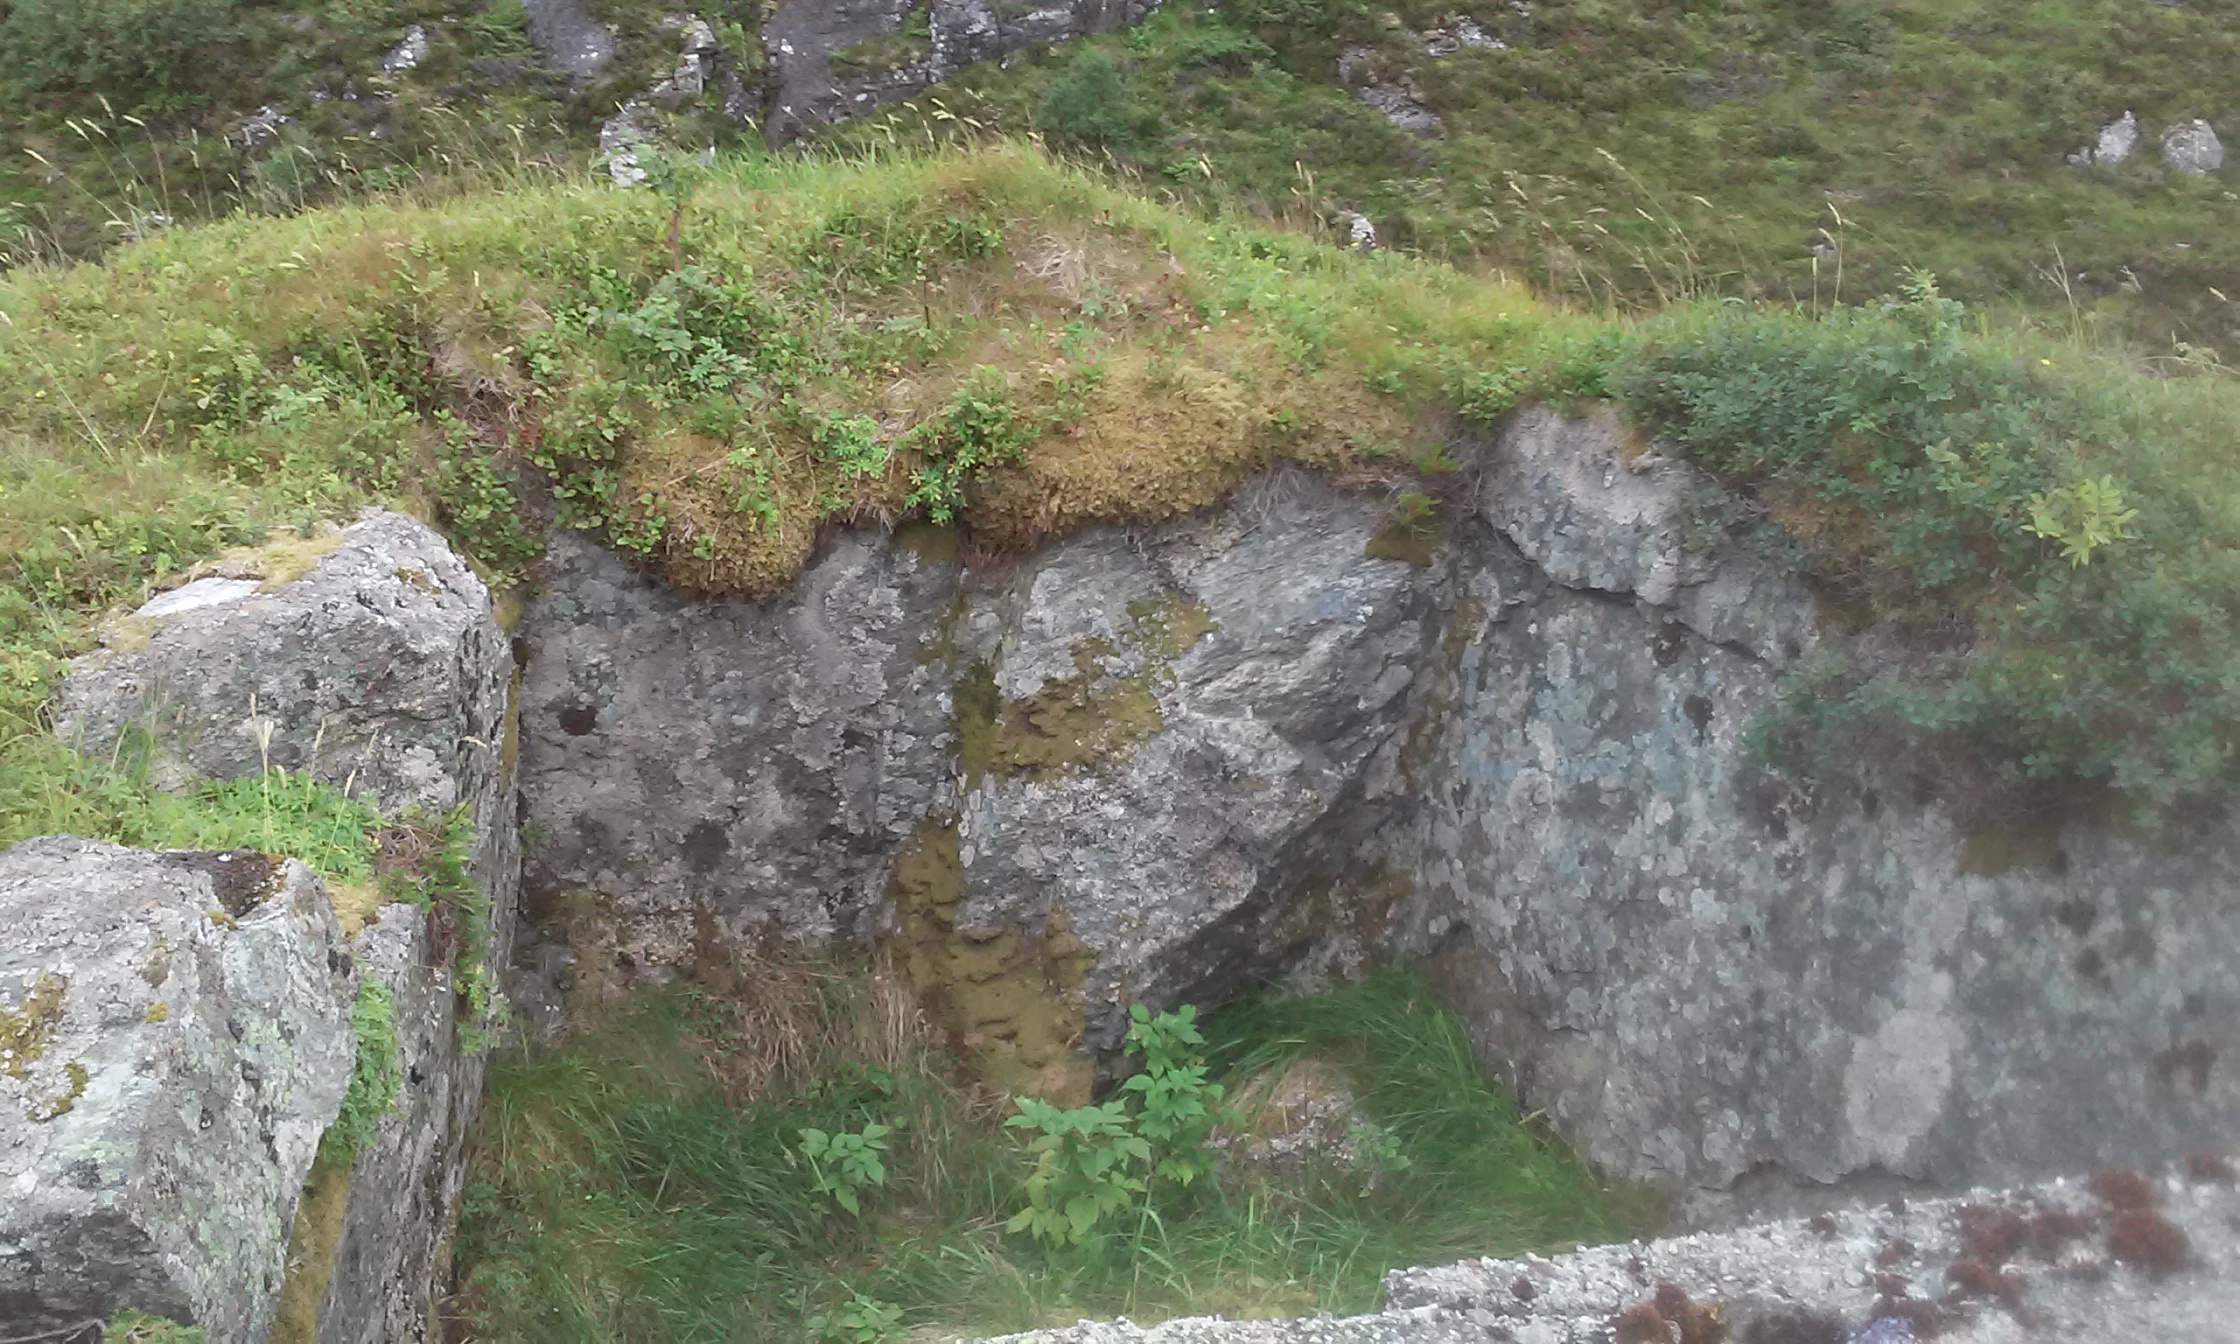 Ikke så mye bunker, mere ett utsprengt hull med oppmurt stein.